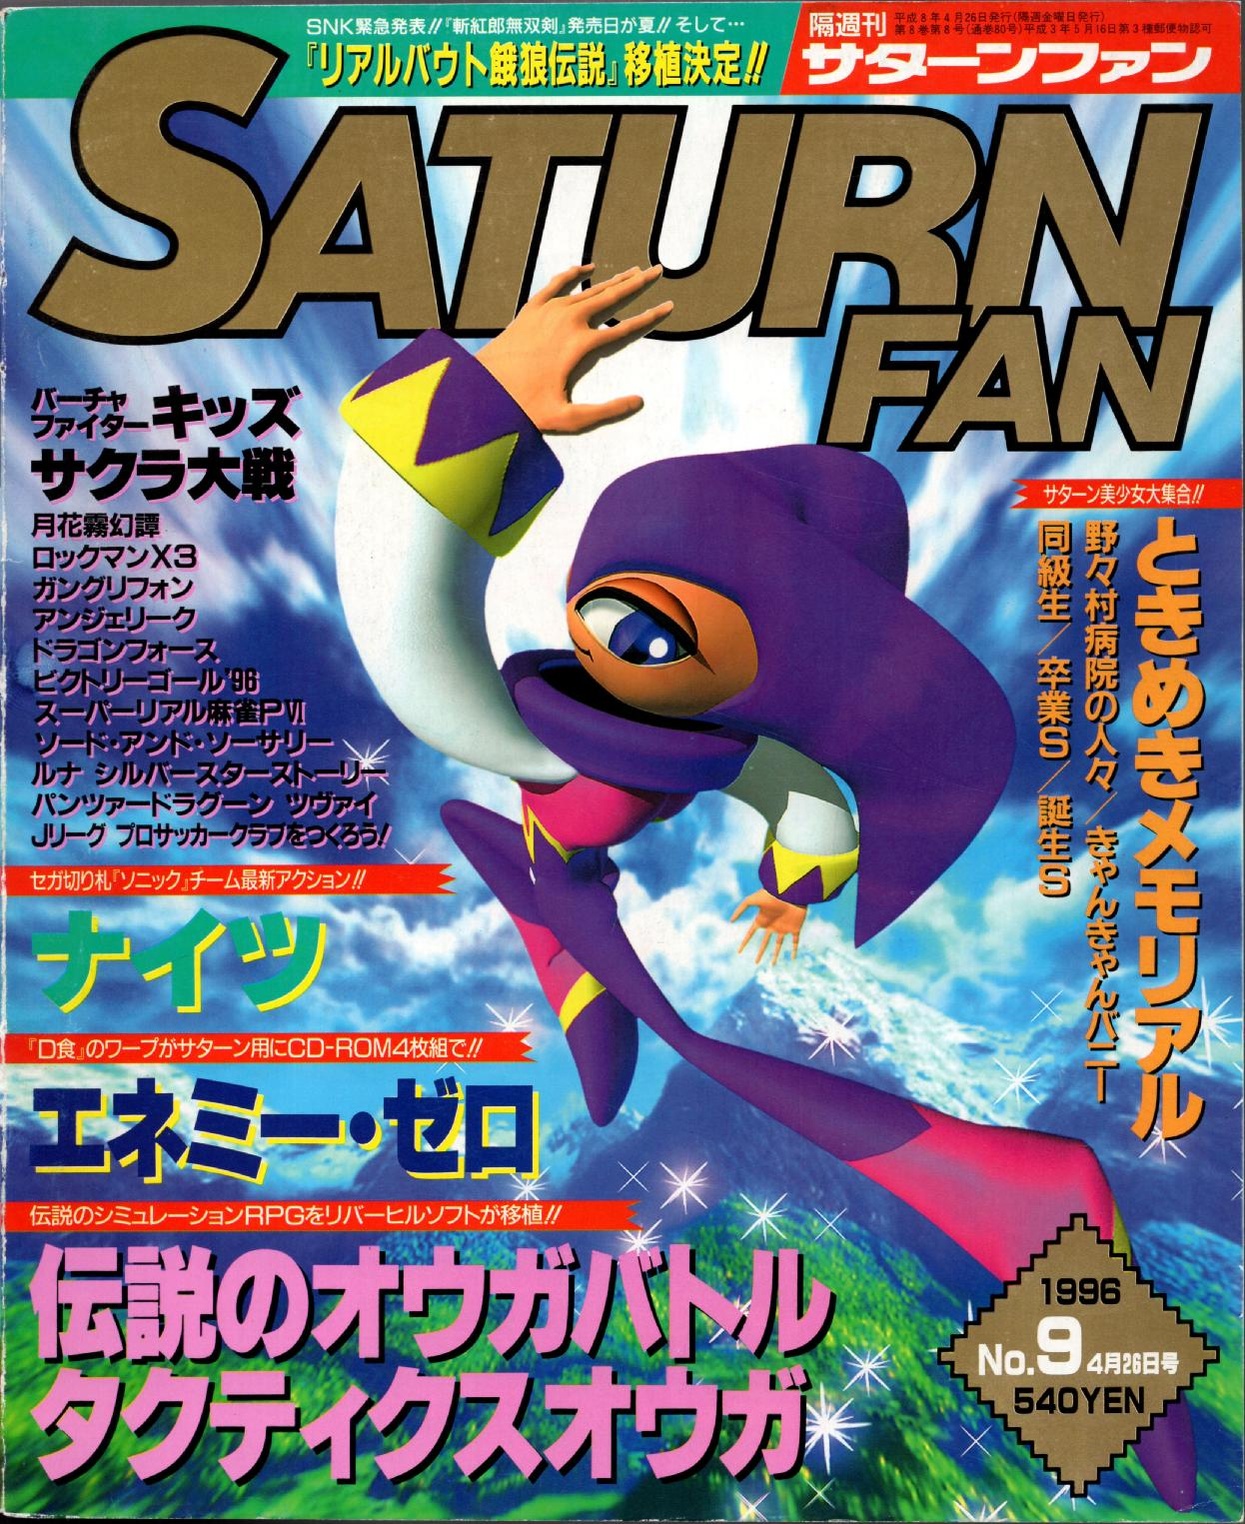 SaturnFan JP 1996-09 19960426.pdf